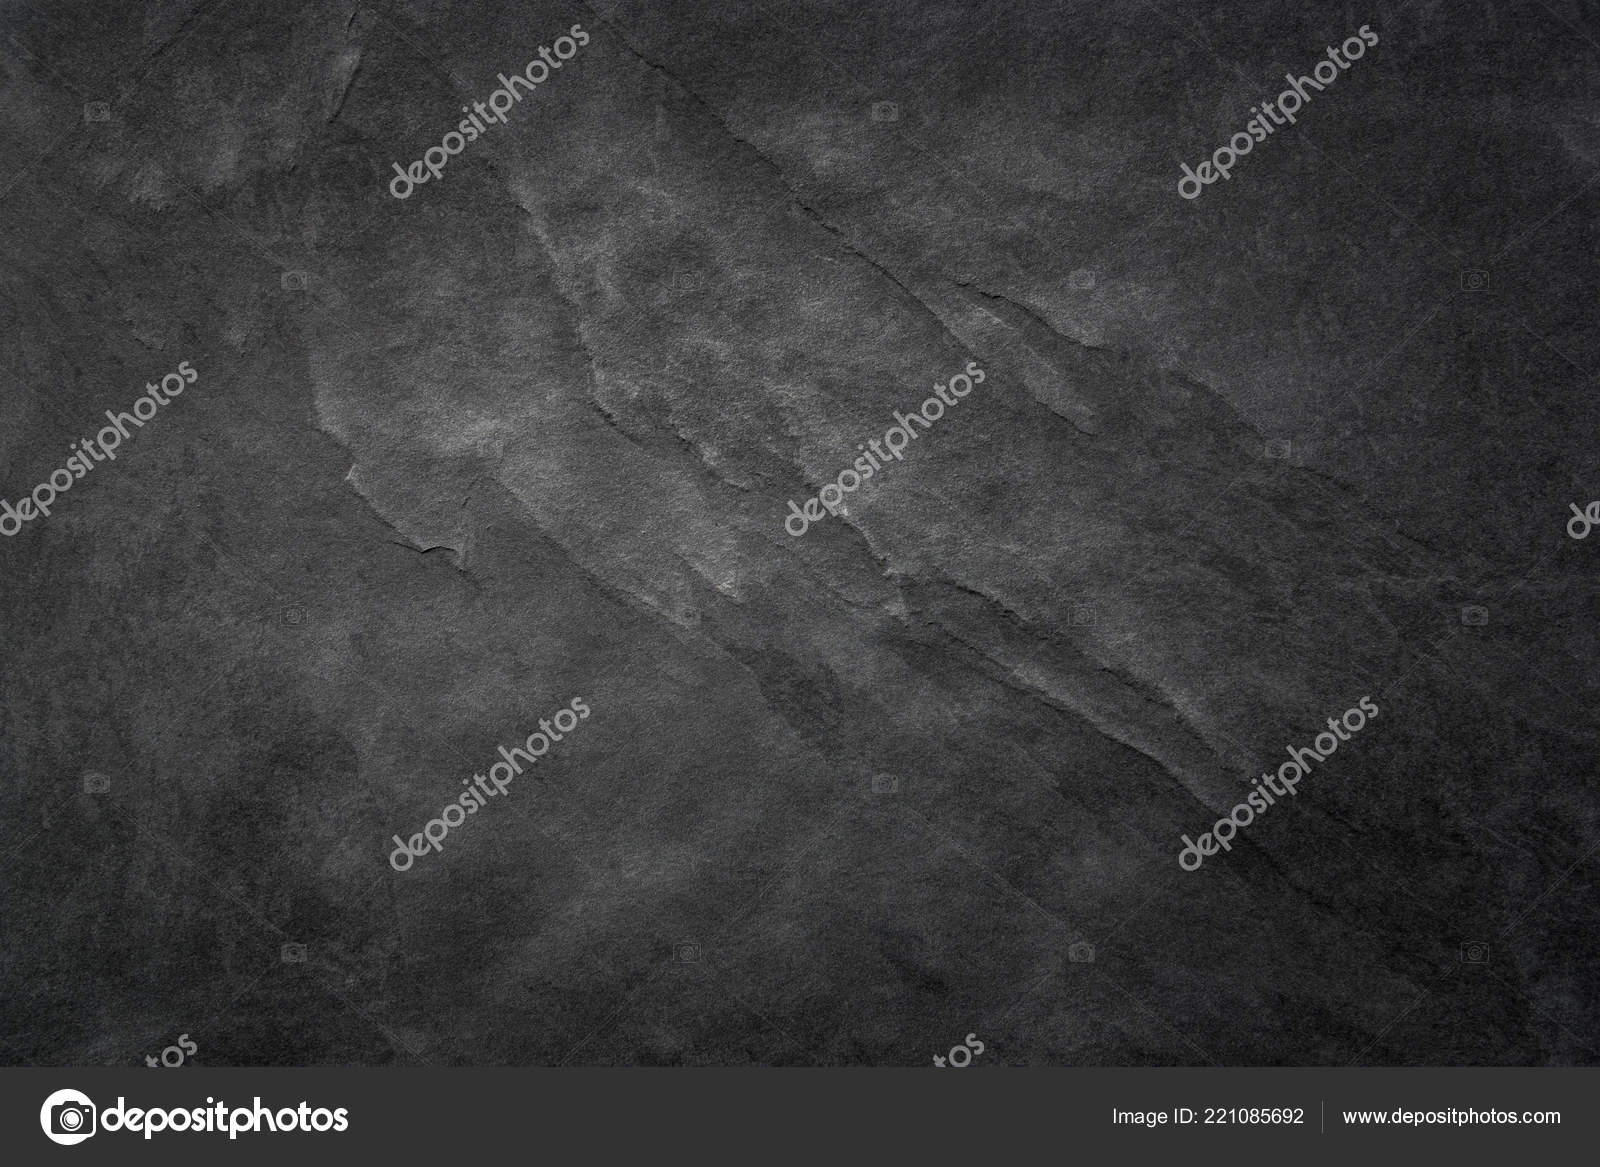 Darkness - HD Wallpaper 